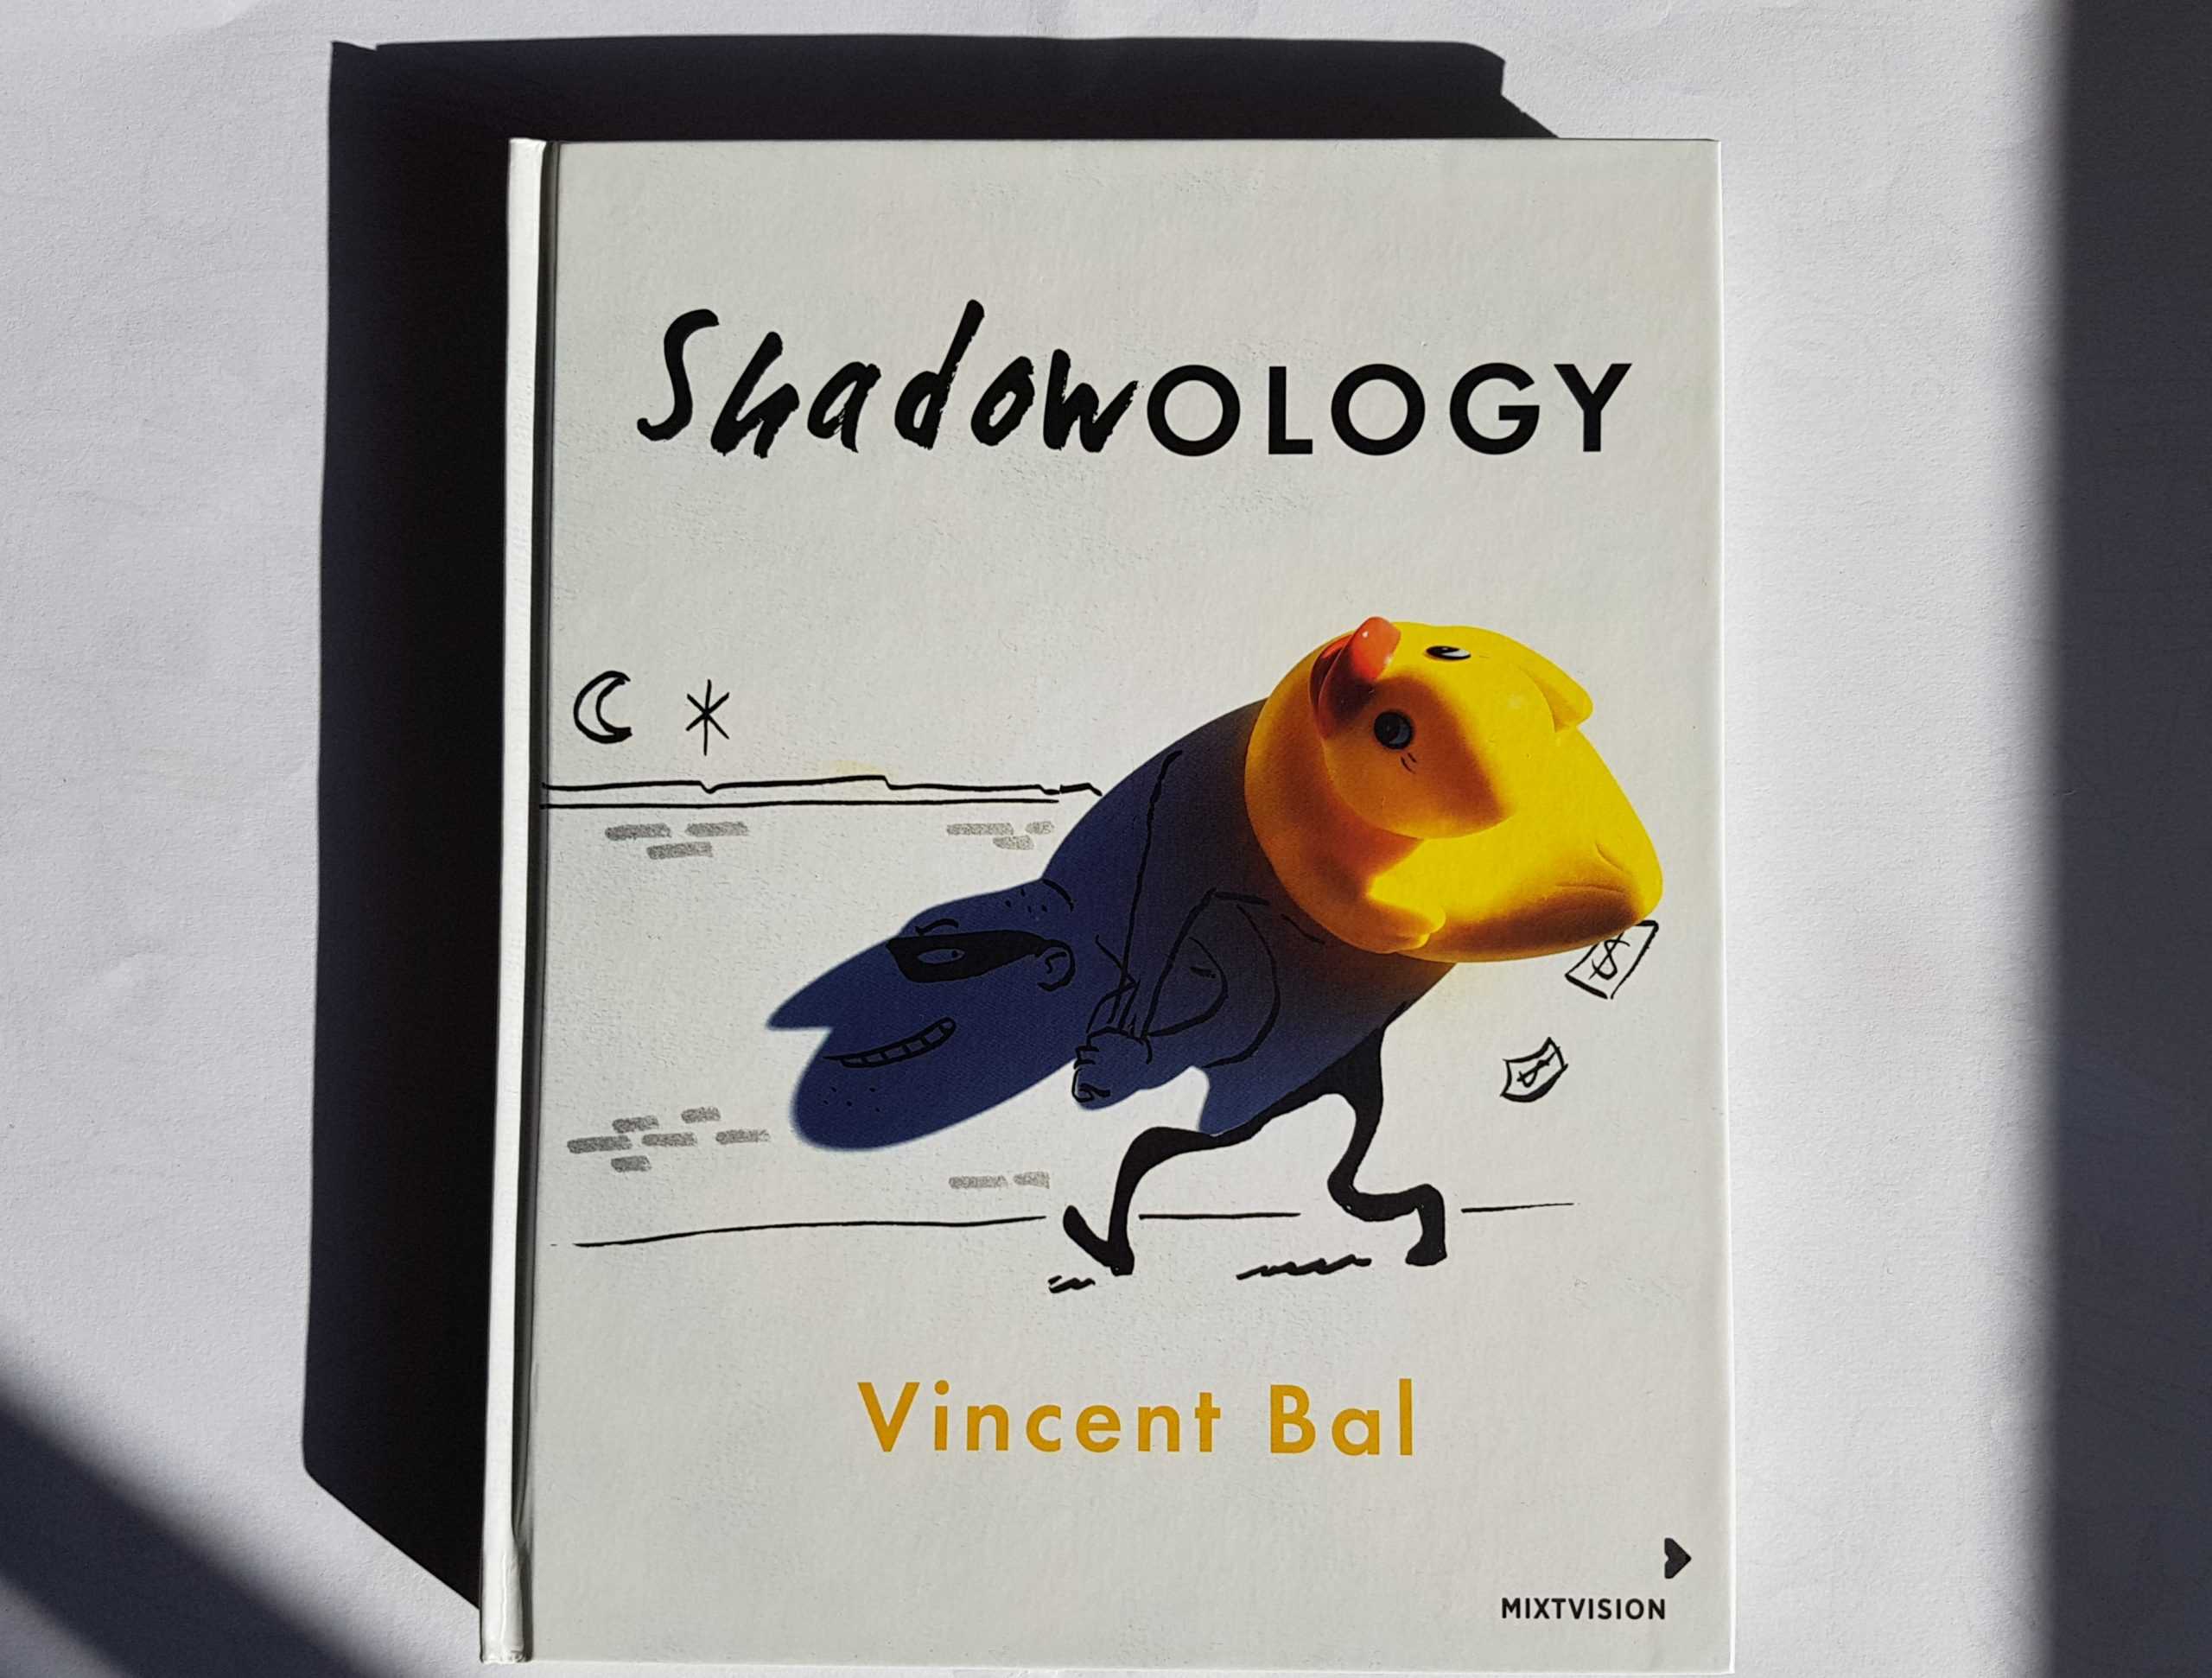 Worte an den Shadowologist Vincent Bal